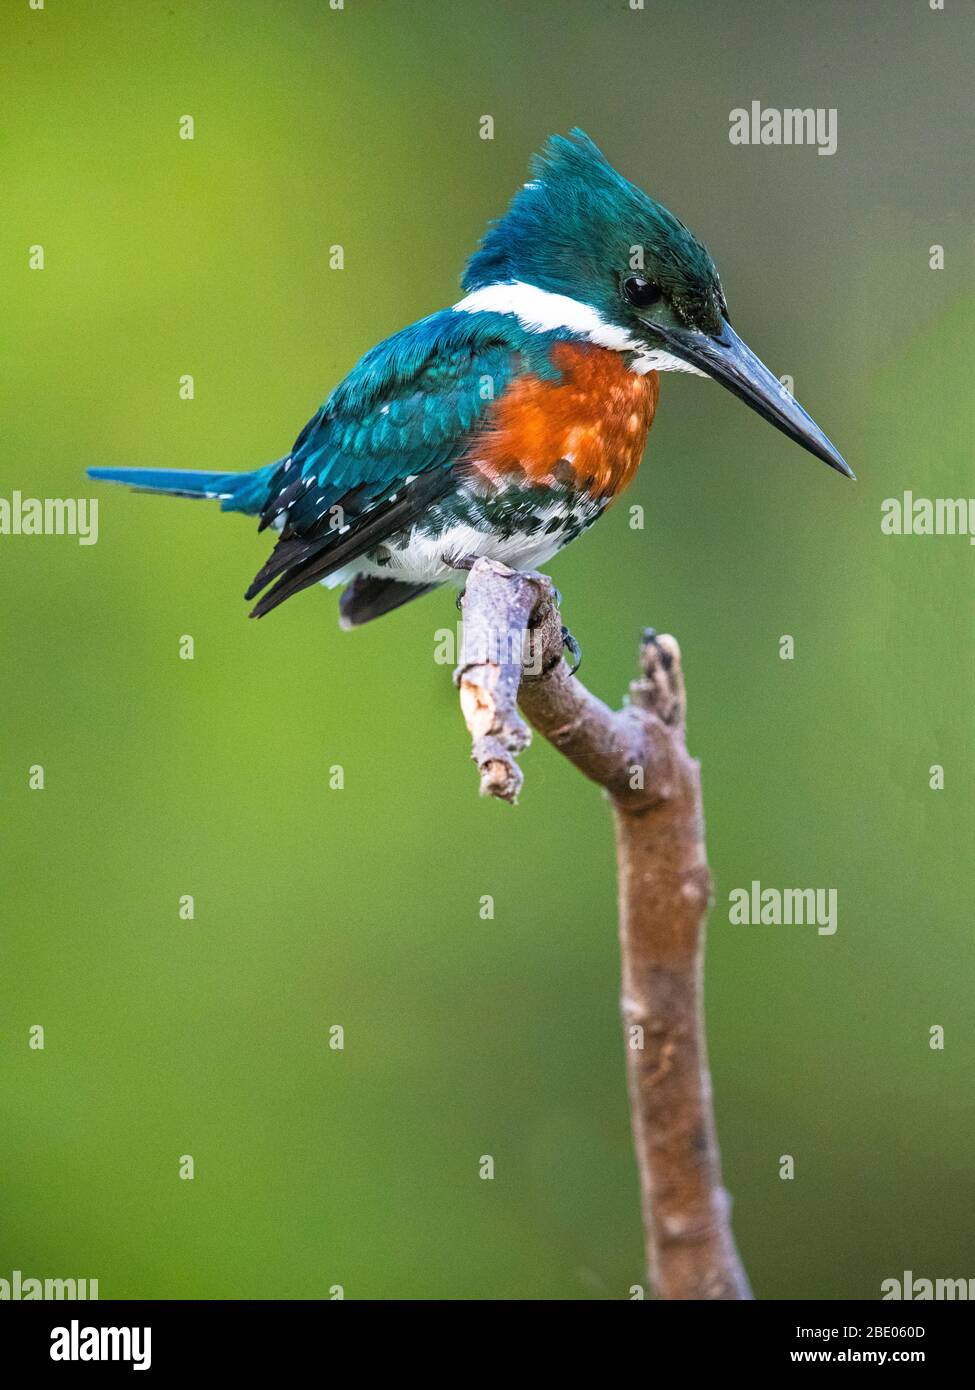 Mâle Amazon kingfisher (Chloroceryle amazona) perché sur branche, Pantanal, Brésil Banque D'Images